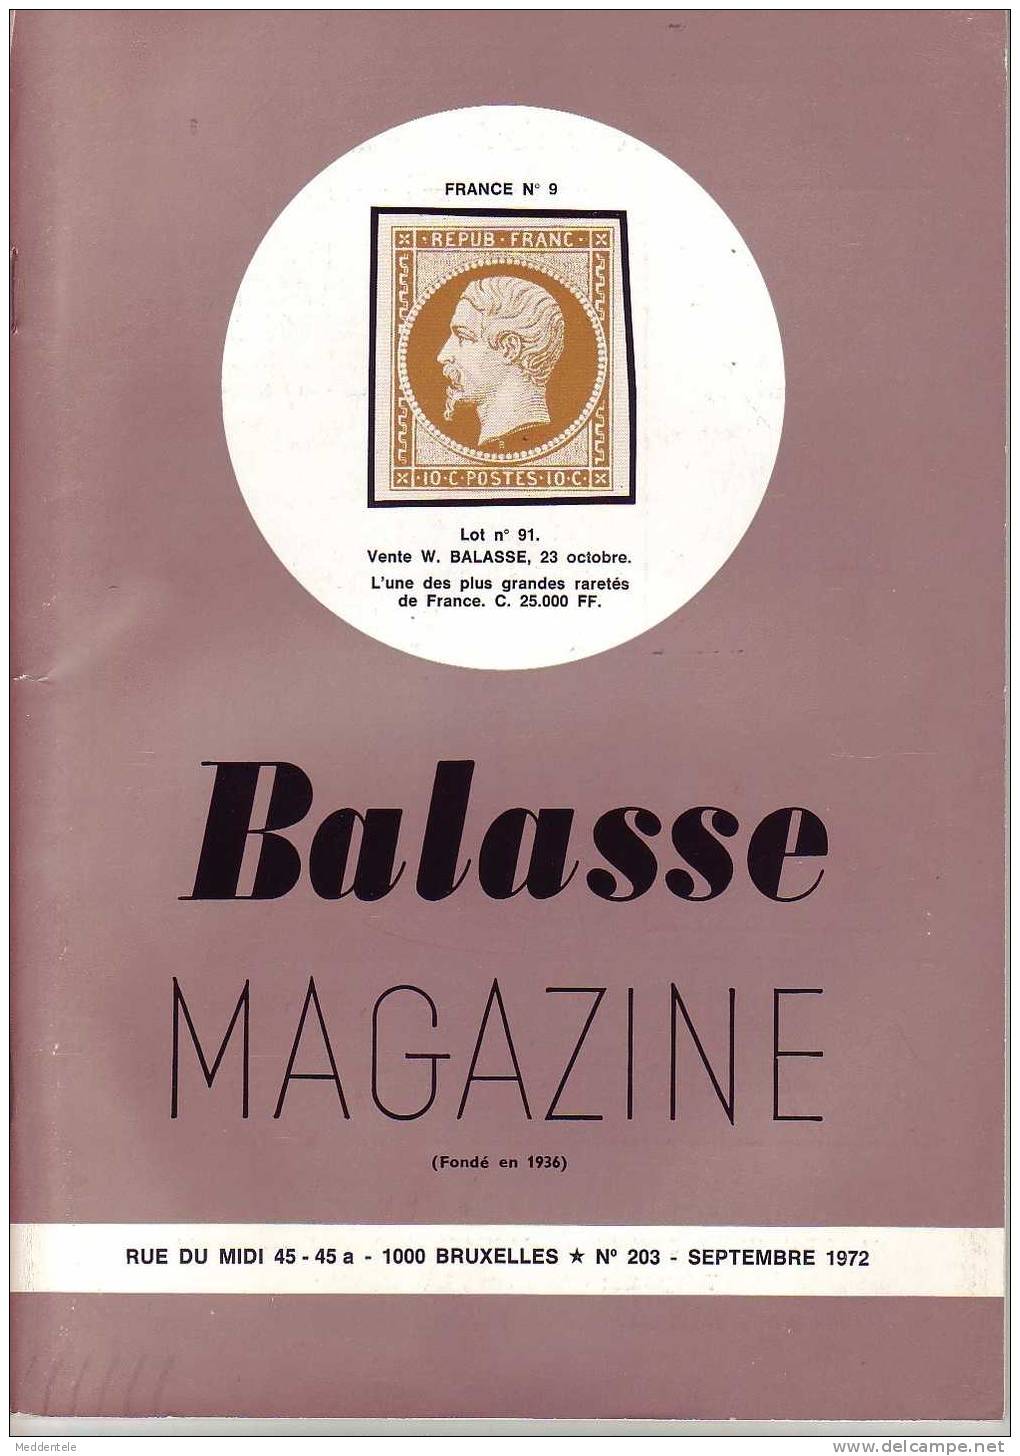 BALASSE MAGAZINE N° 203 - Français (àpd. 1941)